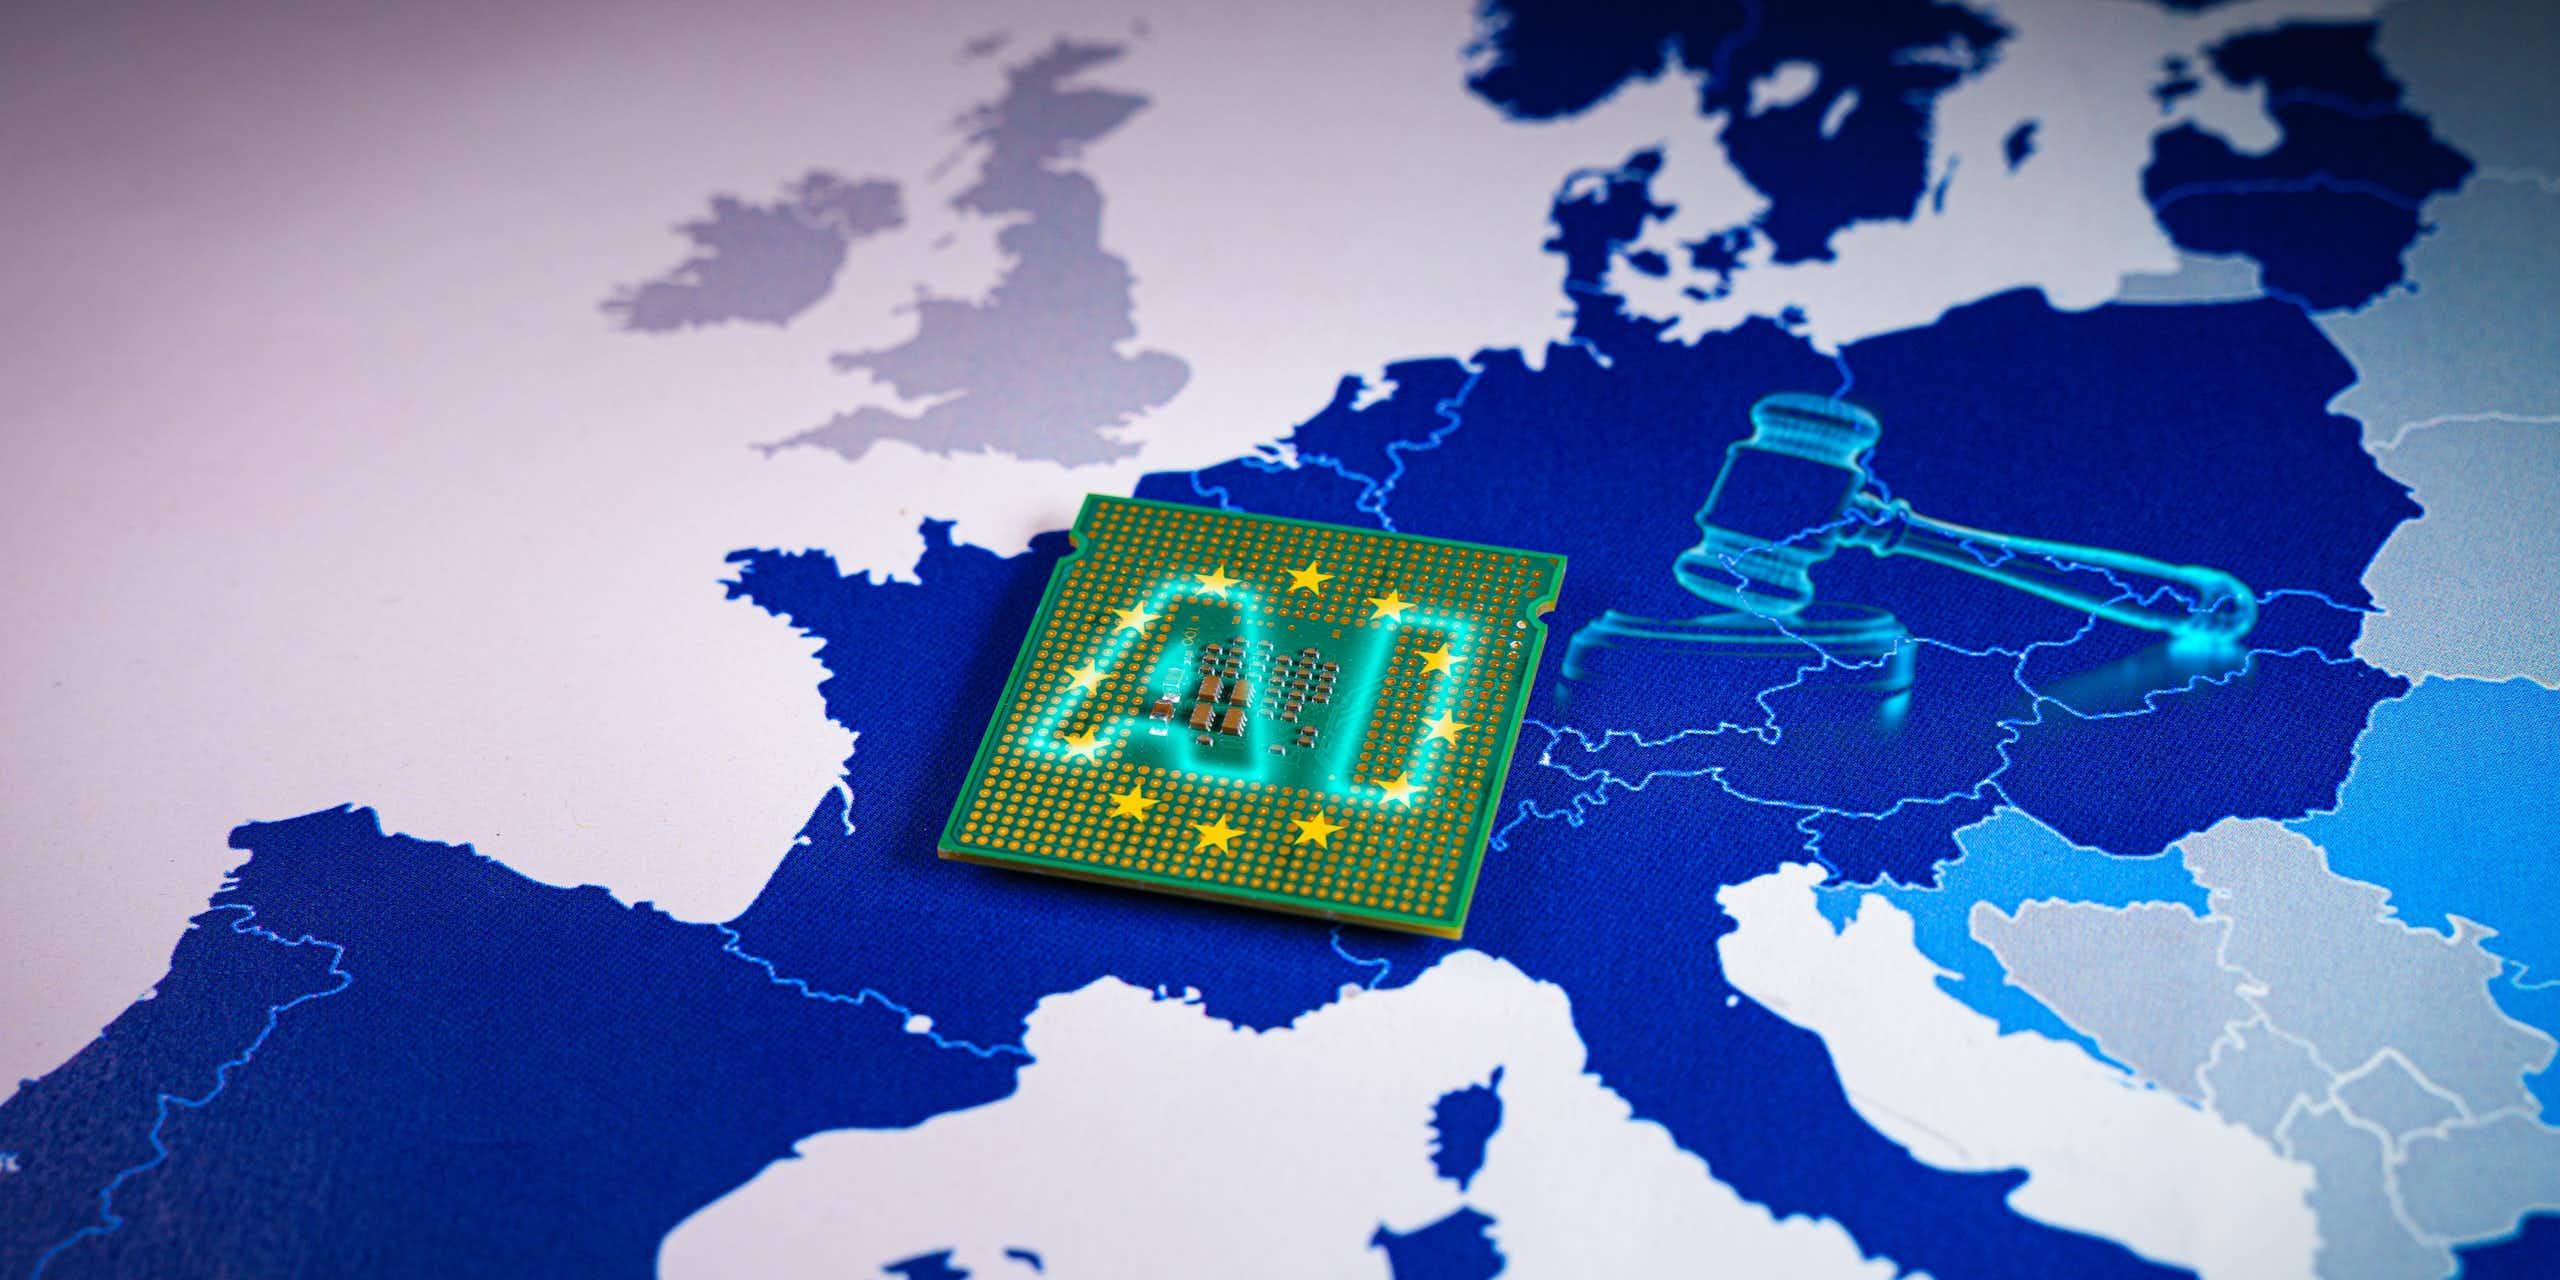 Règlement européen sur l’IA : un texte voté mais encore des ambiguïtés